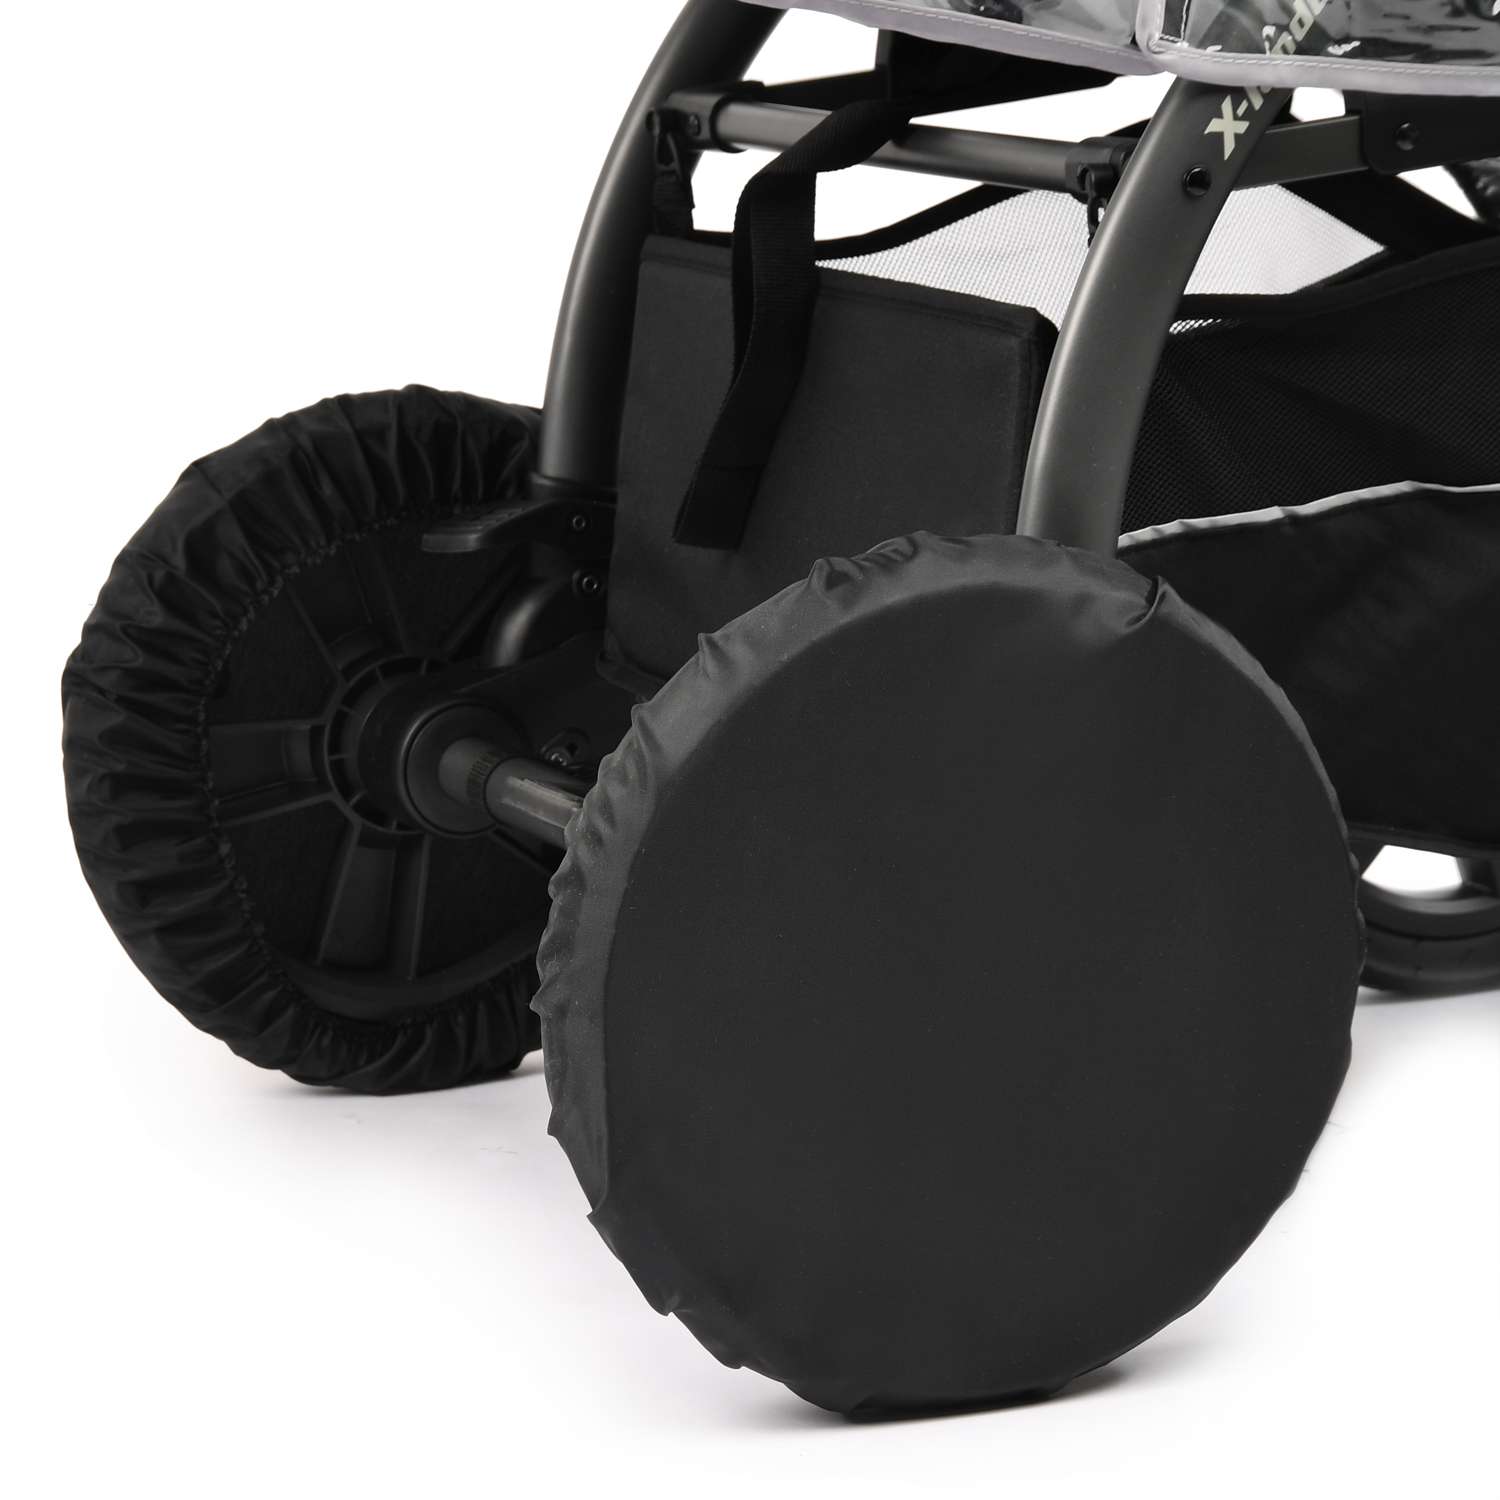 Чехлы на колеса X-Lander для коляски W-AKC02-00583 - фото 1